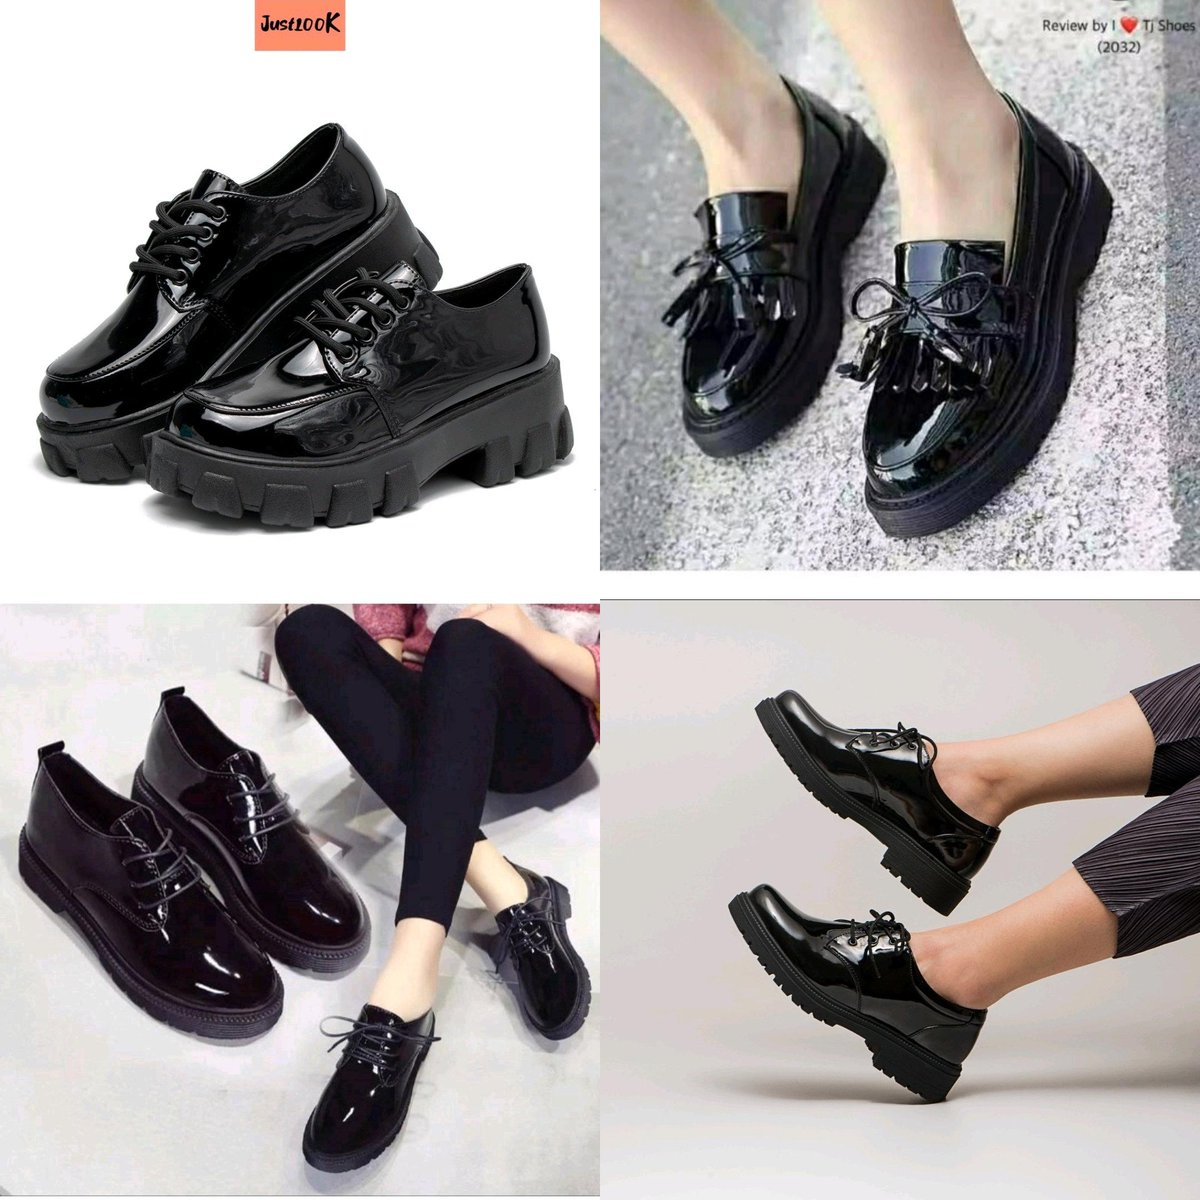 👢 Rekomendasi Sepatu Docmart Cewek 👢

~~ a thread